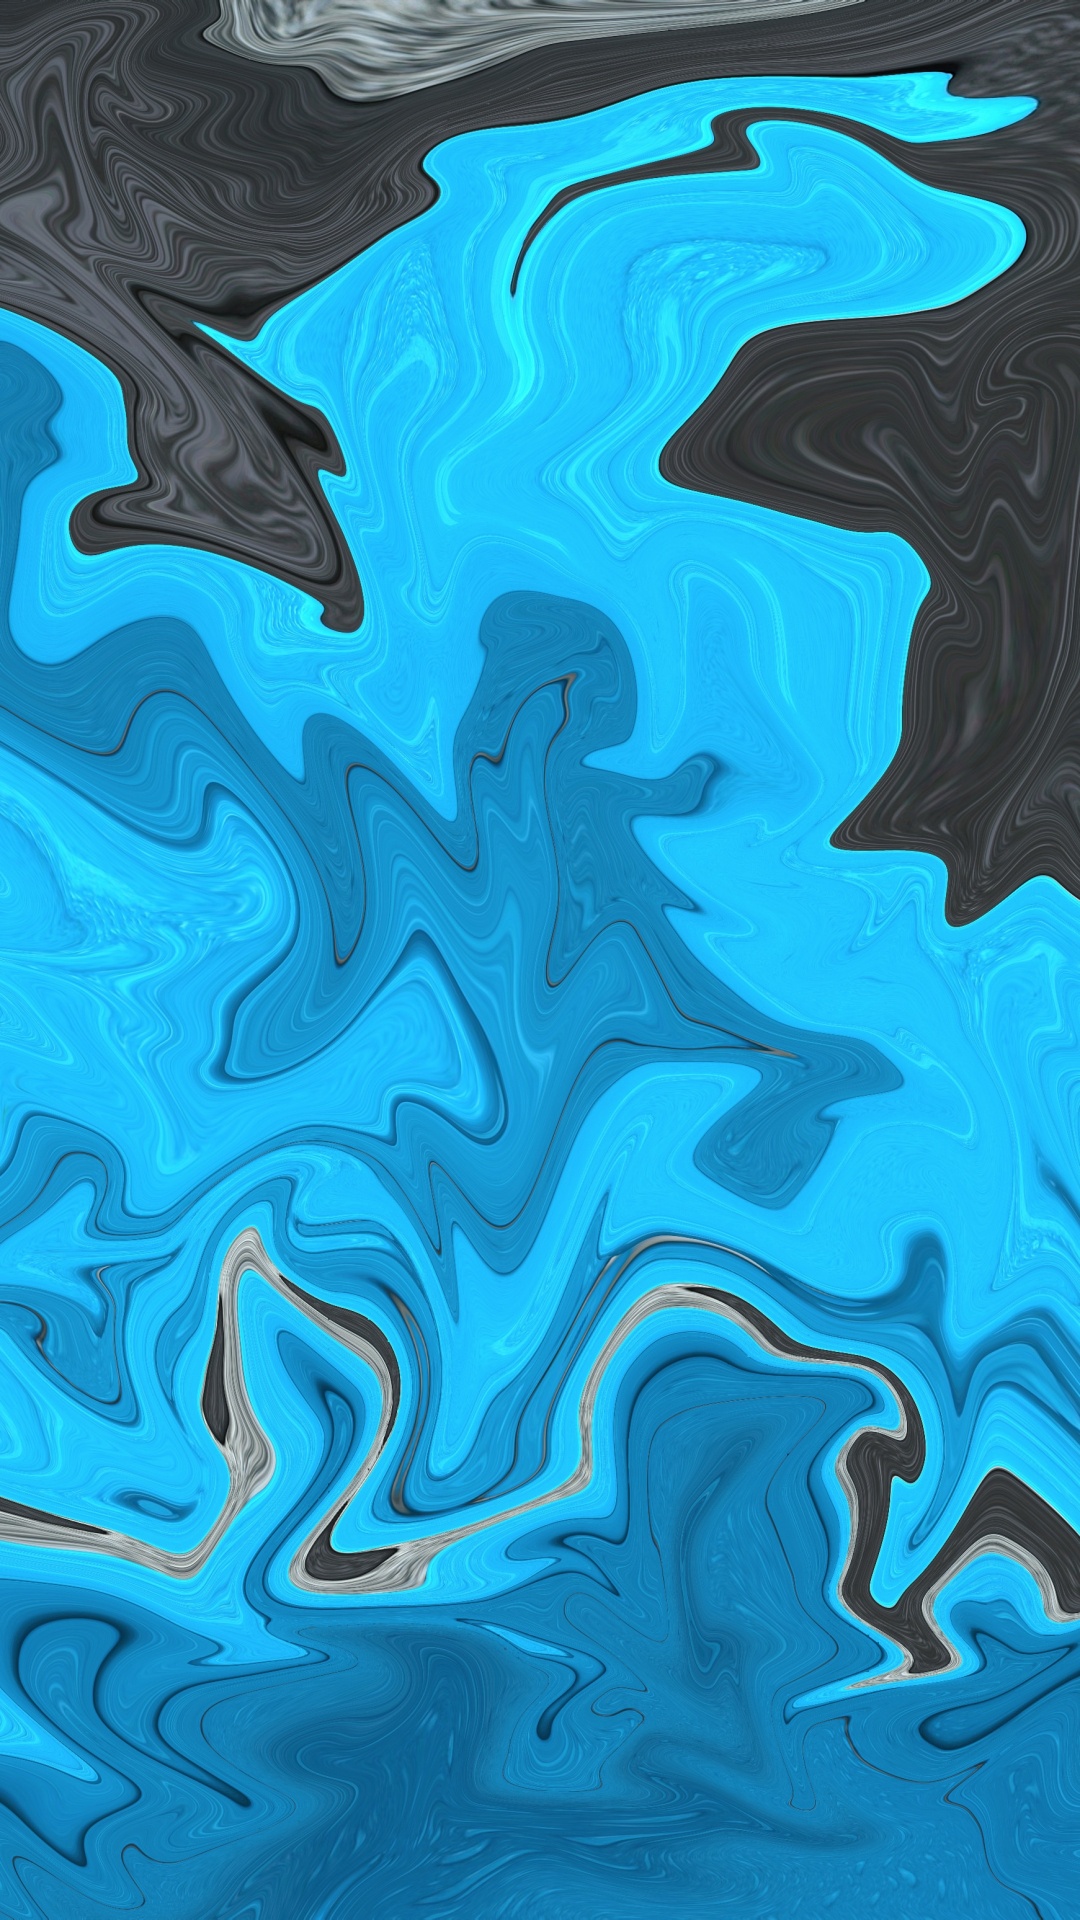 Pintura Abstracta Azul y Negra. Wallpaper in 1080x1920 Resolution